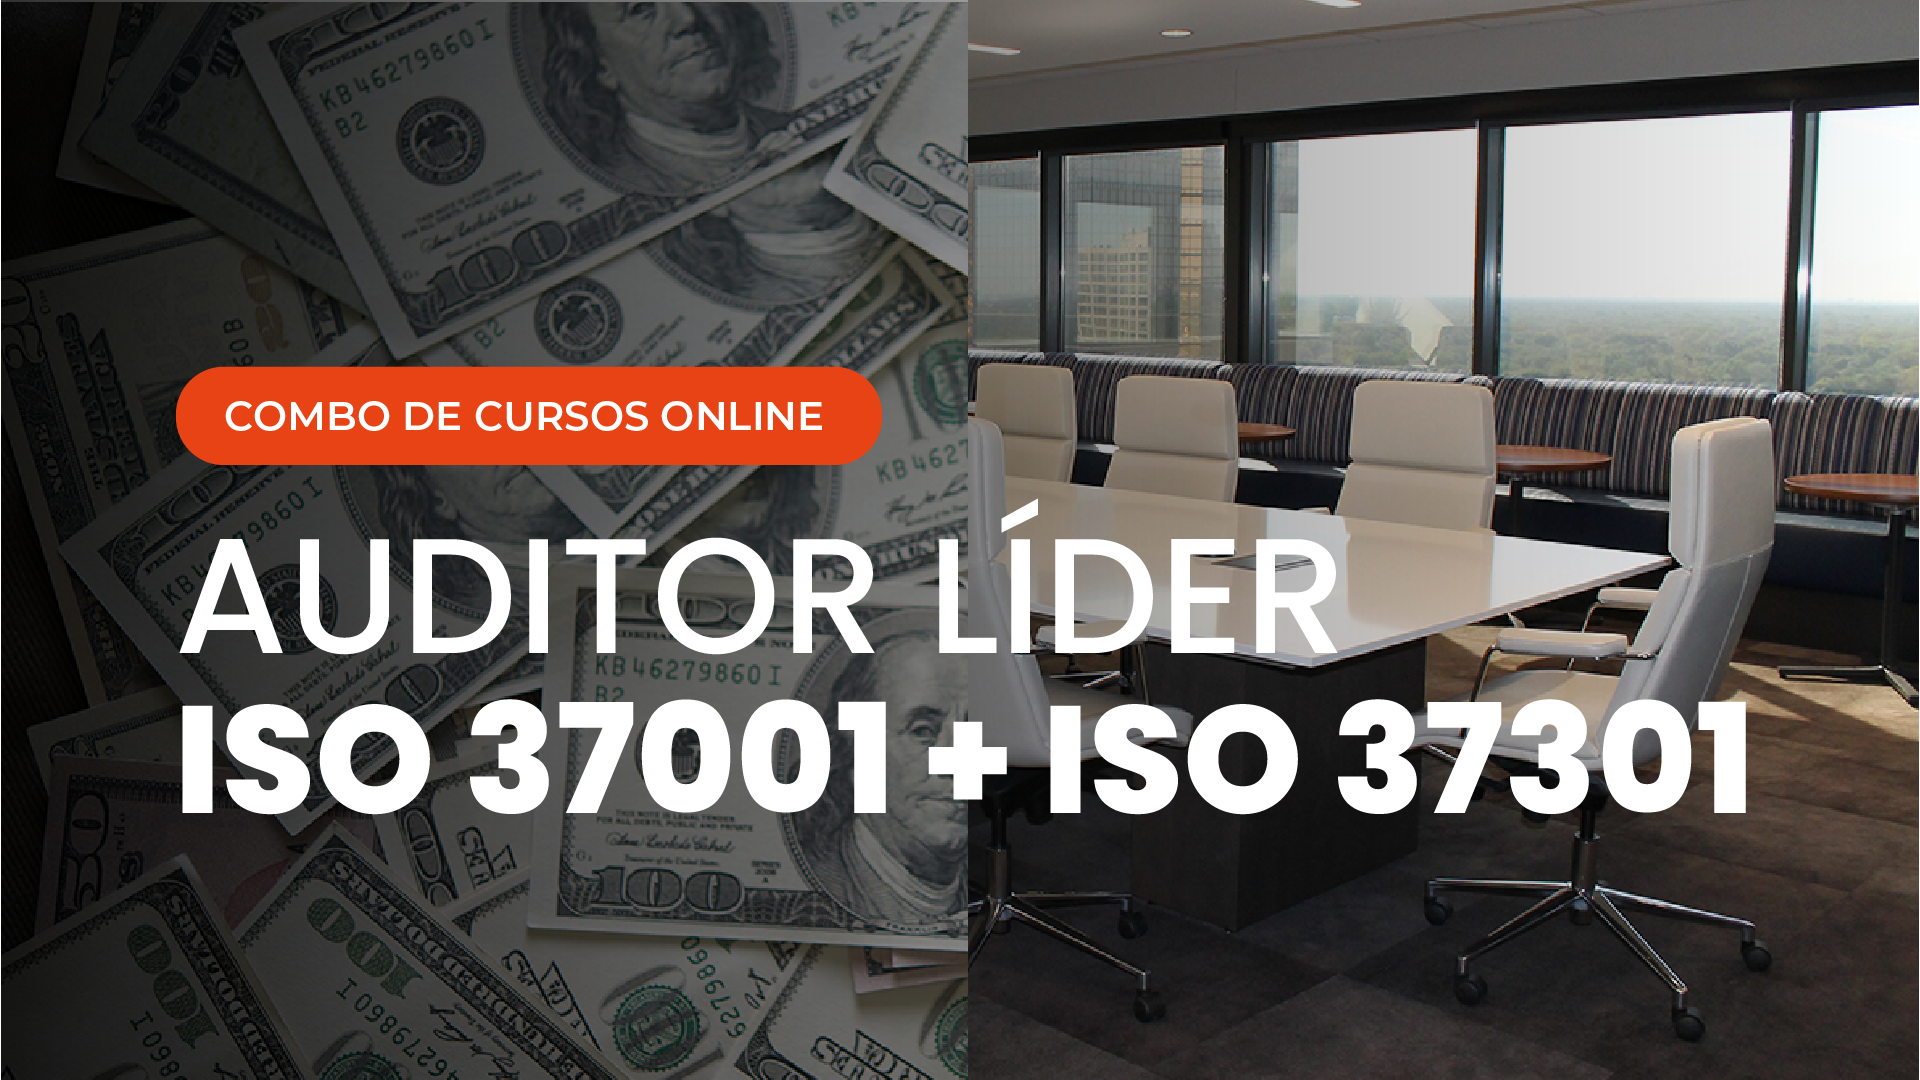 Curso Online de Auditor Líder ISO 37001 e Auditor Líder ISO 37301 Sistema de Gestão Antissuborno e Sistema de Gestão de Compliance